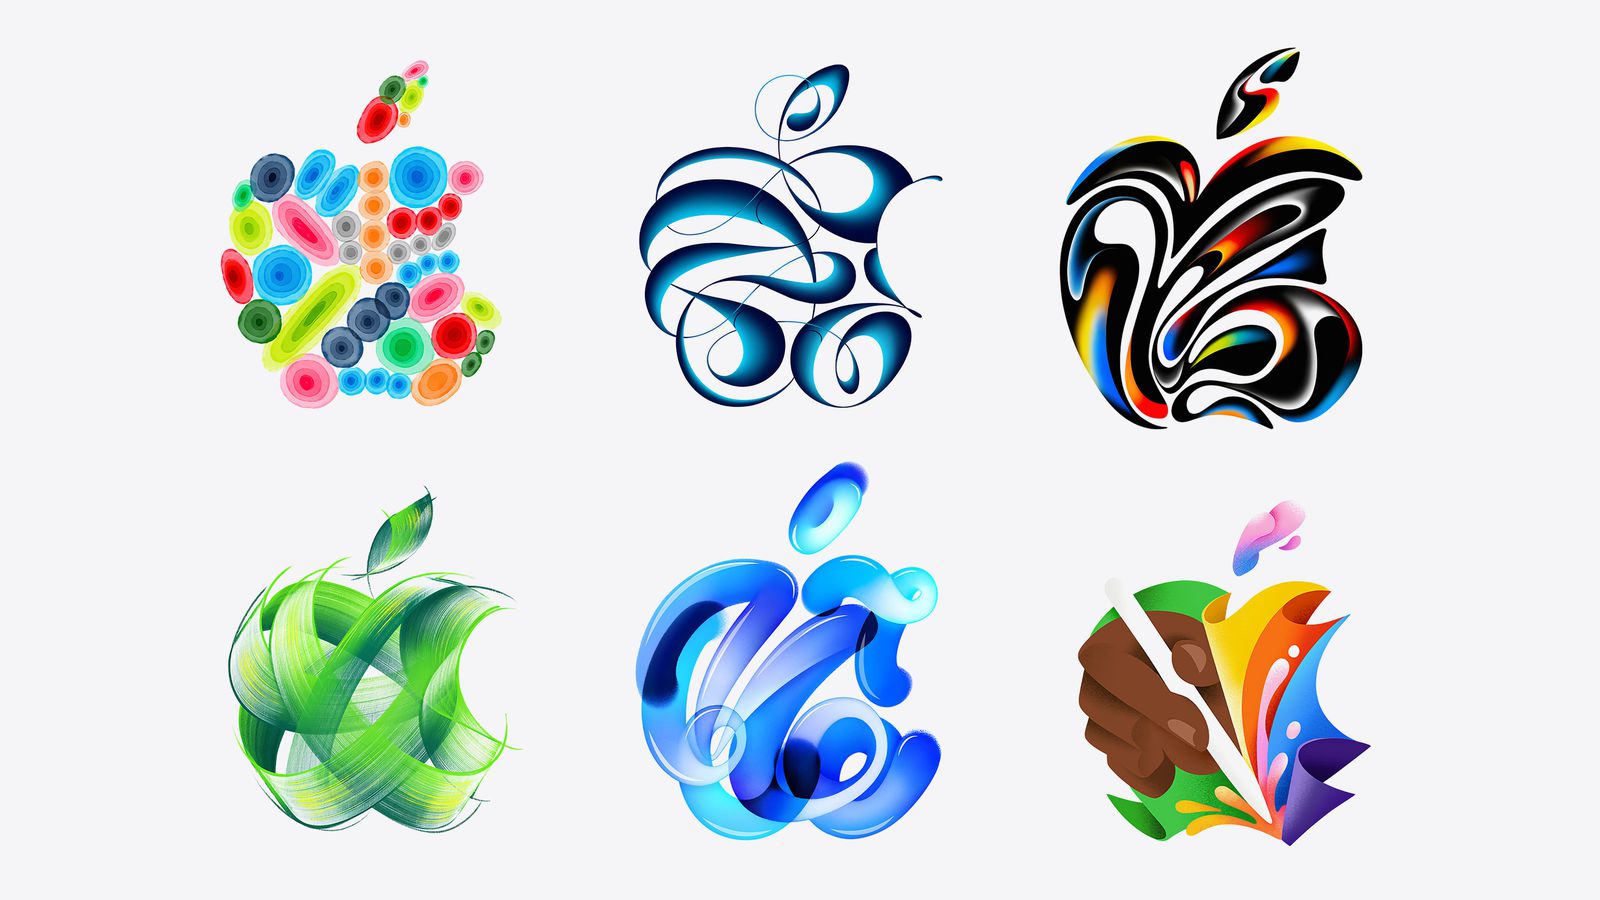 Από το iPhoneIslam.com, έξι αφηρημένα σχέδια σε έντονα χρώματα και ρέοντα σχήματα, συμπεριλαμβανομένης μιας συλλογής σφαιρών, σχημάτων που μοιάζουν με κορδέλα και μοτίβων φύλλων επηρεασμένα από τα κρόσσια νέα.